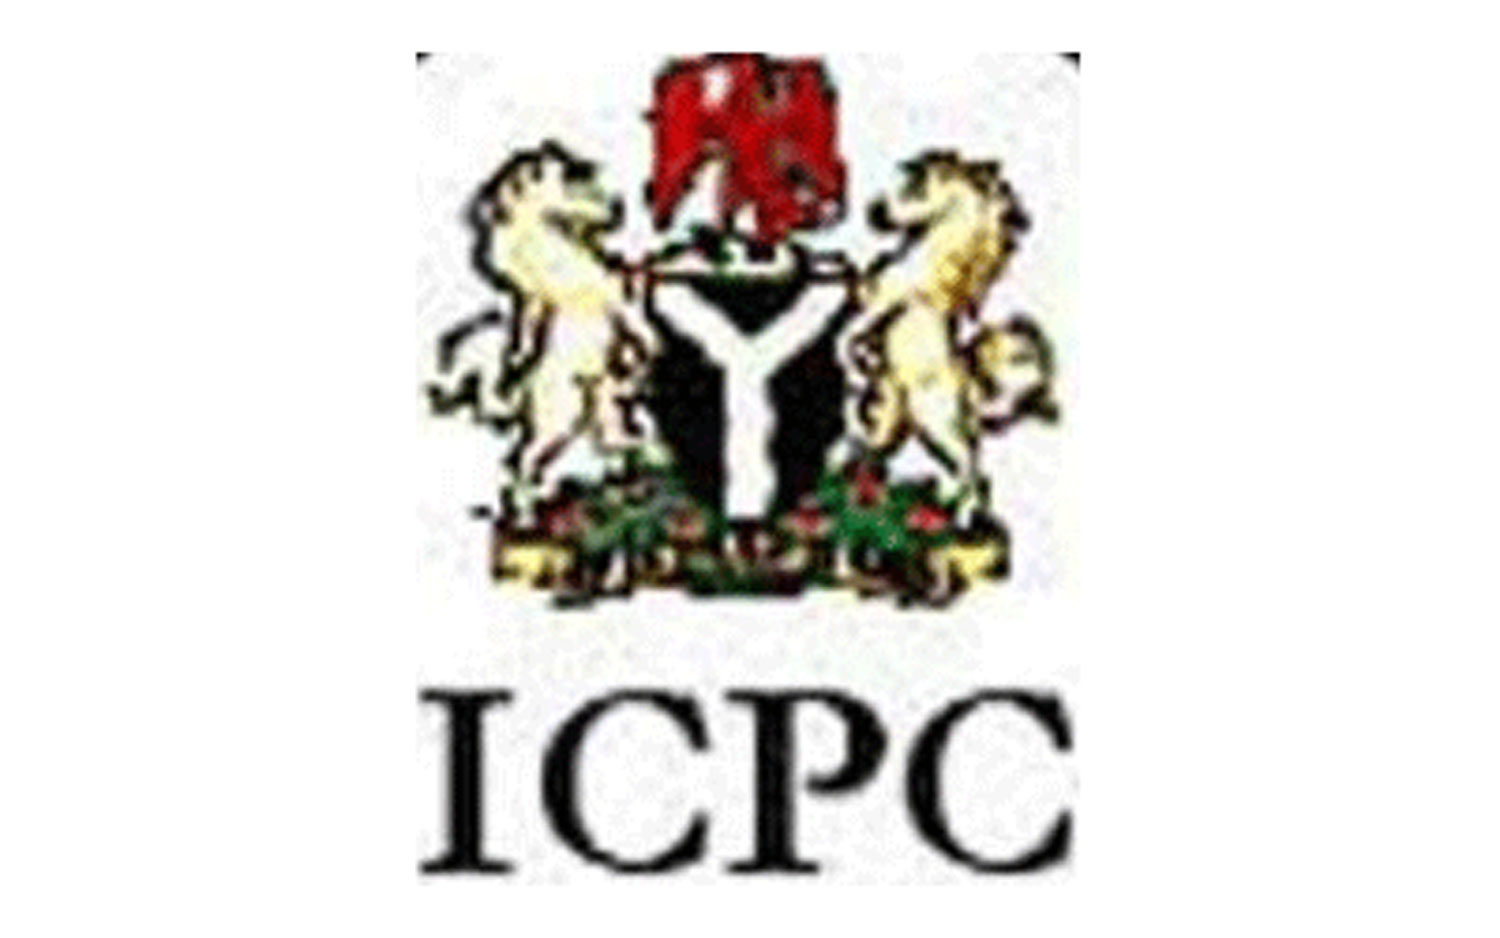 Unite against corruption, ICPC tells Nigerians